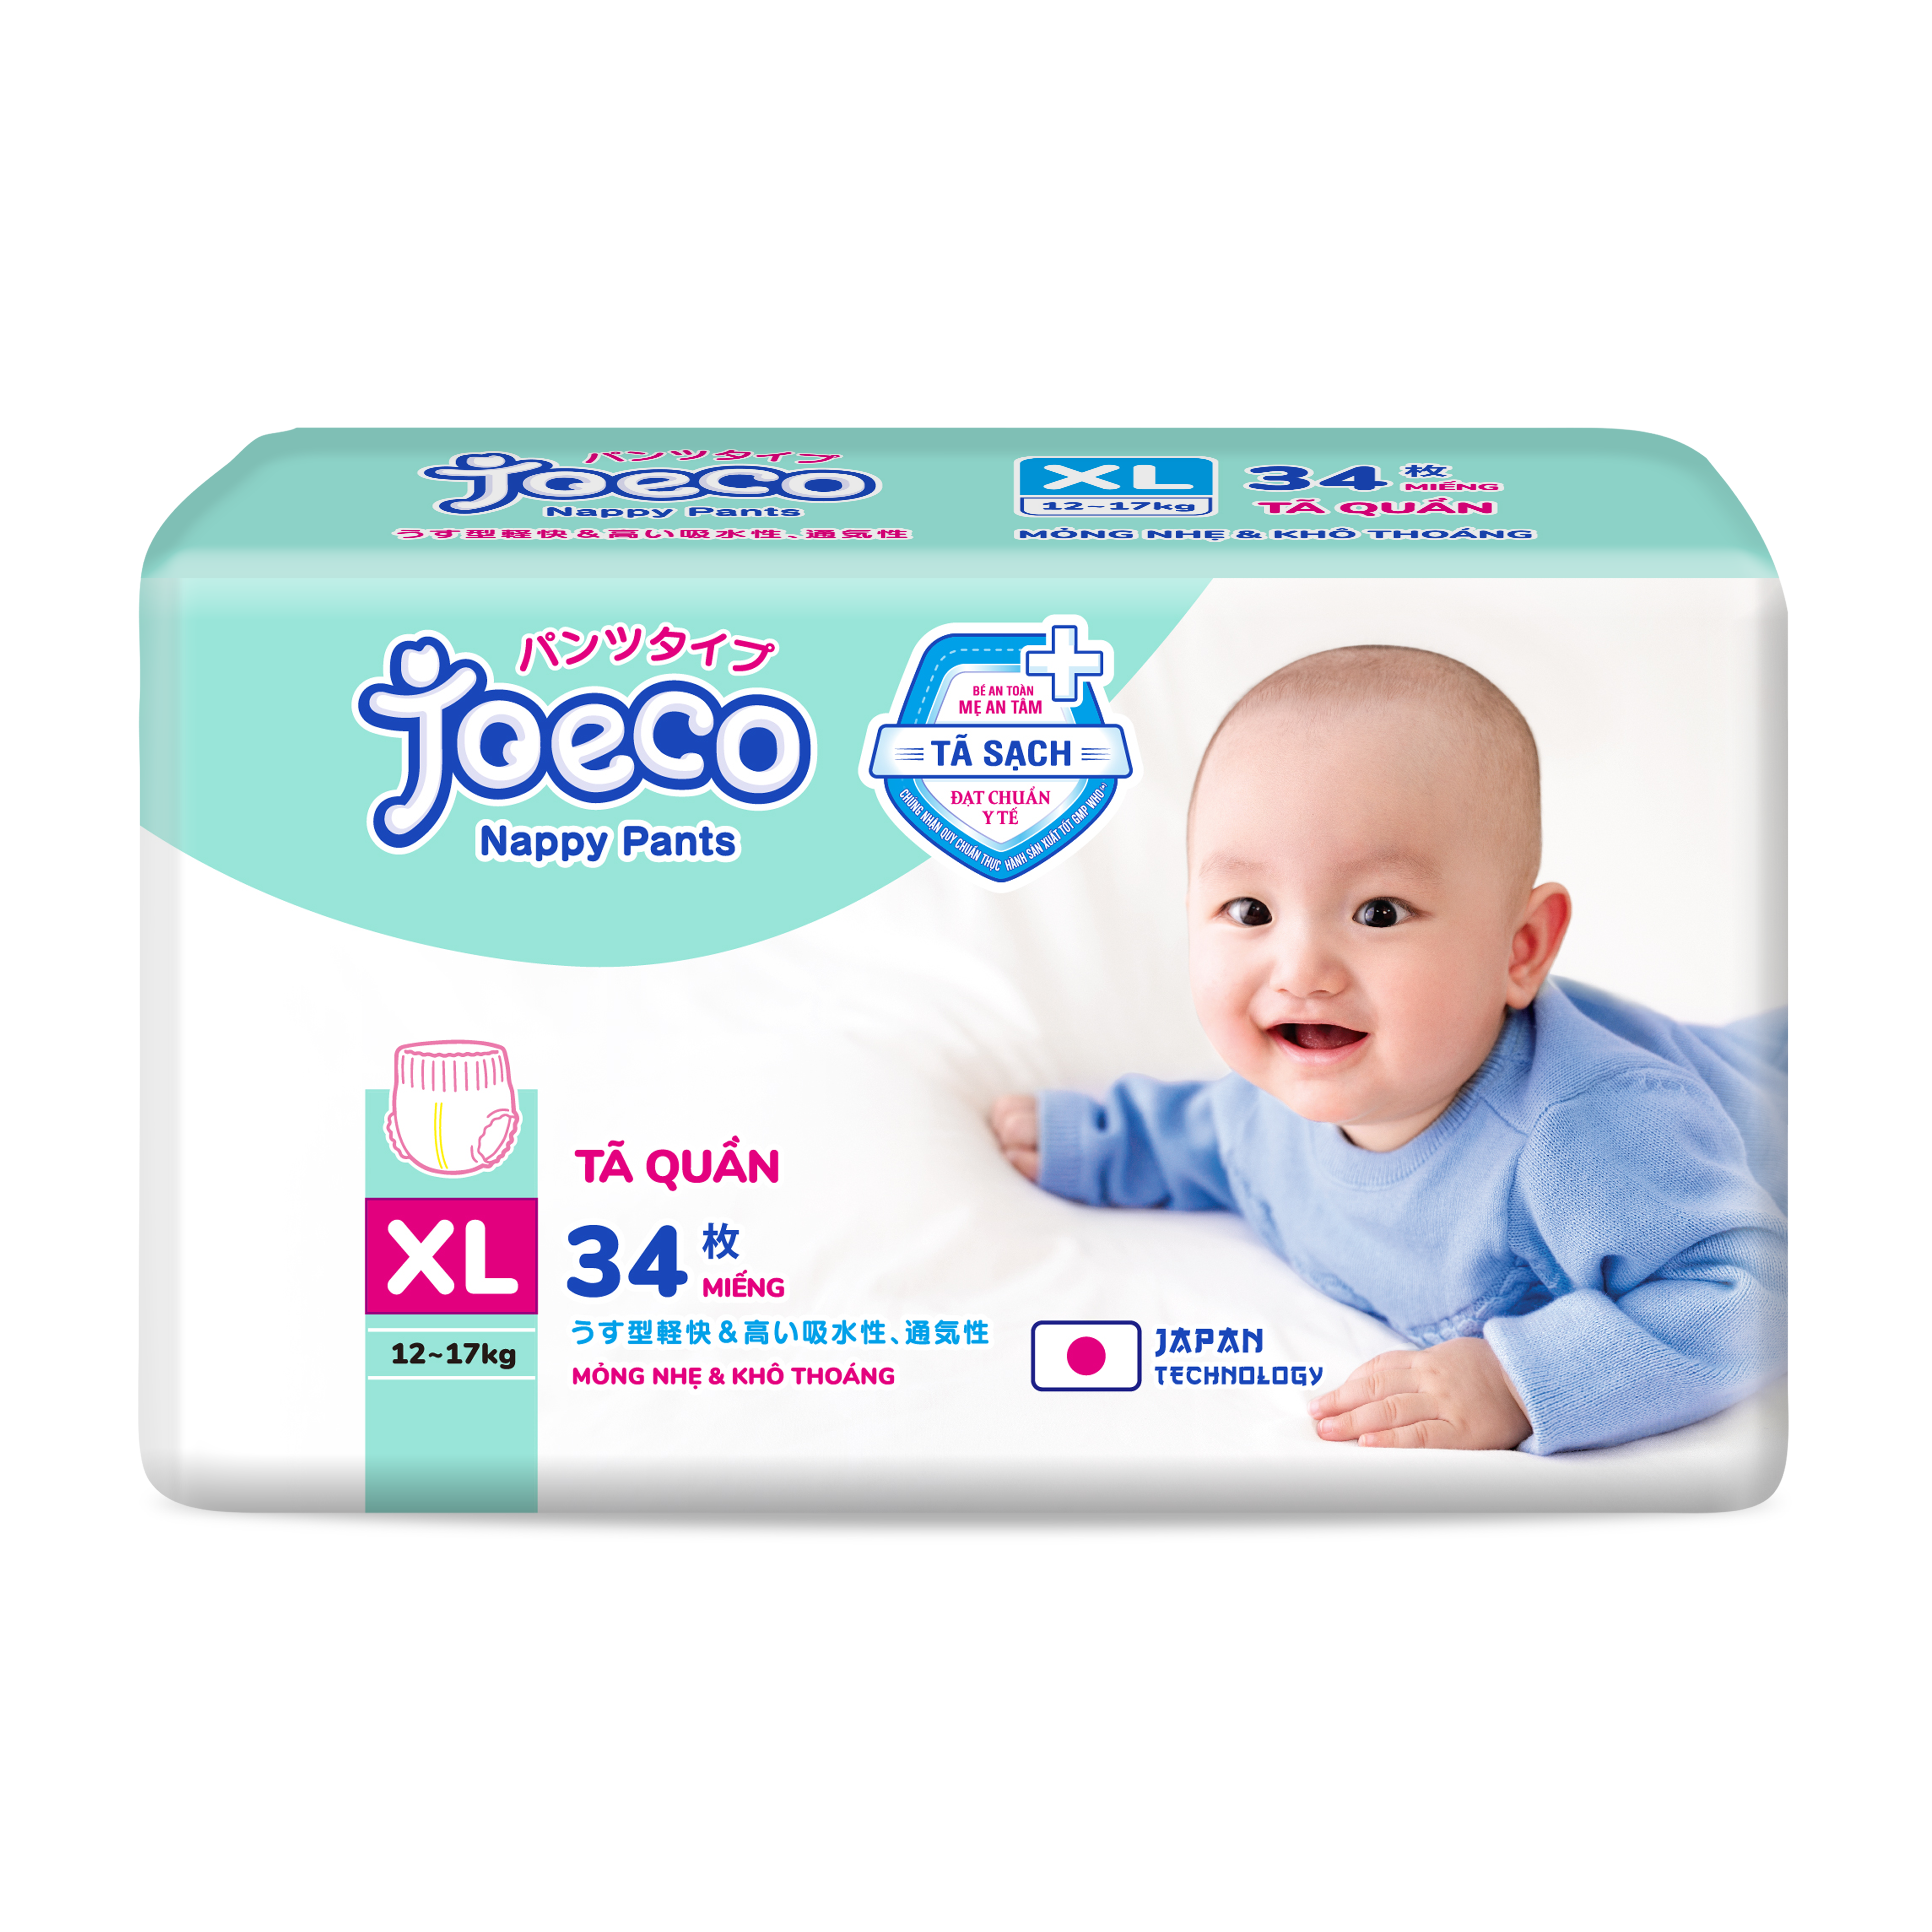 JoeCo pants diaper size XL34